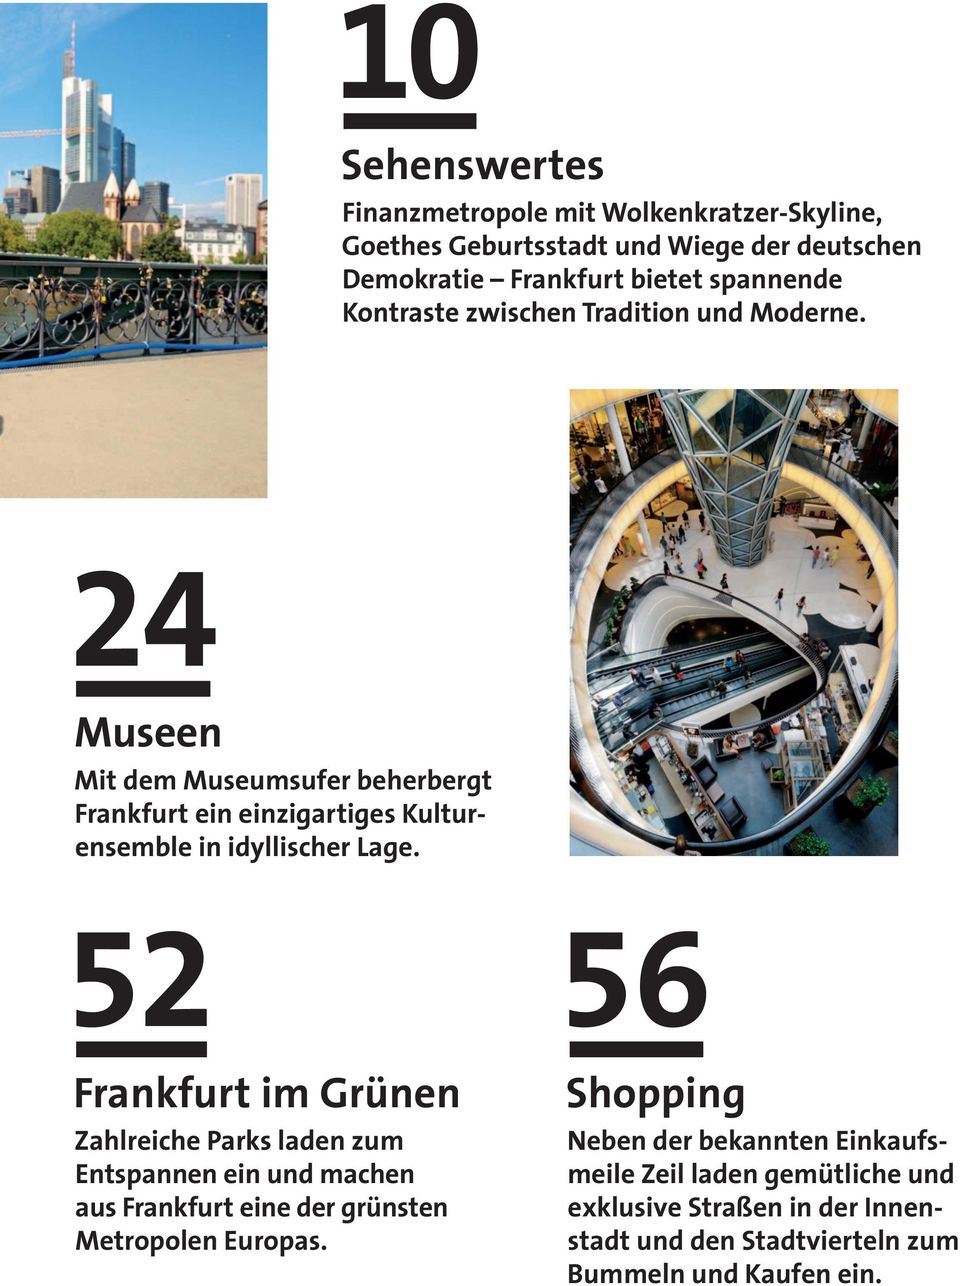 24 Museen Mit dem Museumsufer beherbergt Frankfurt ein einzigartiges Kulturensemble in idyllischer Lage.